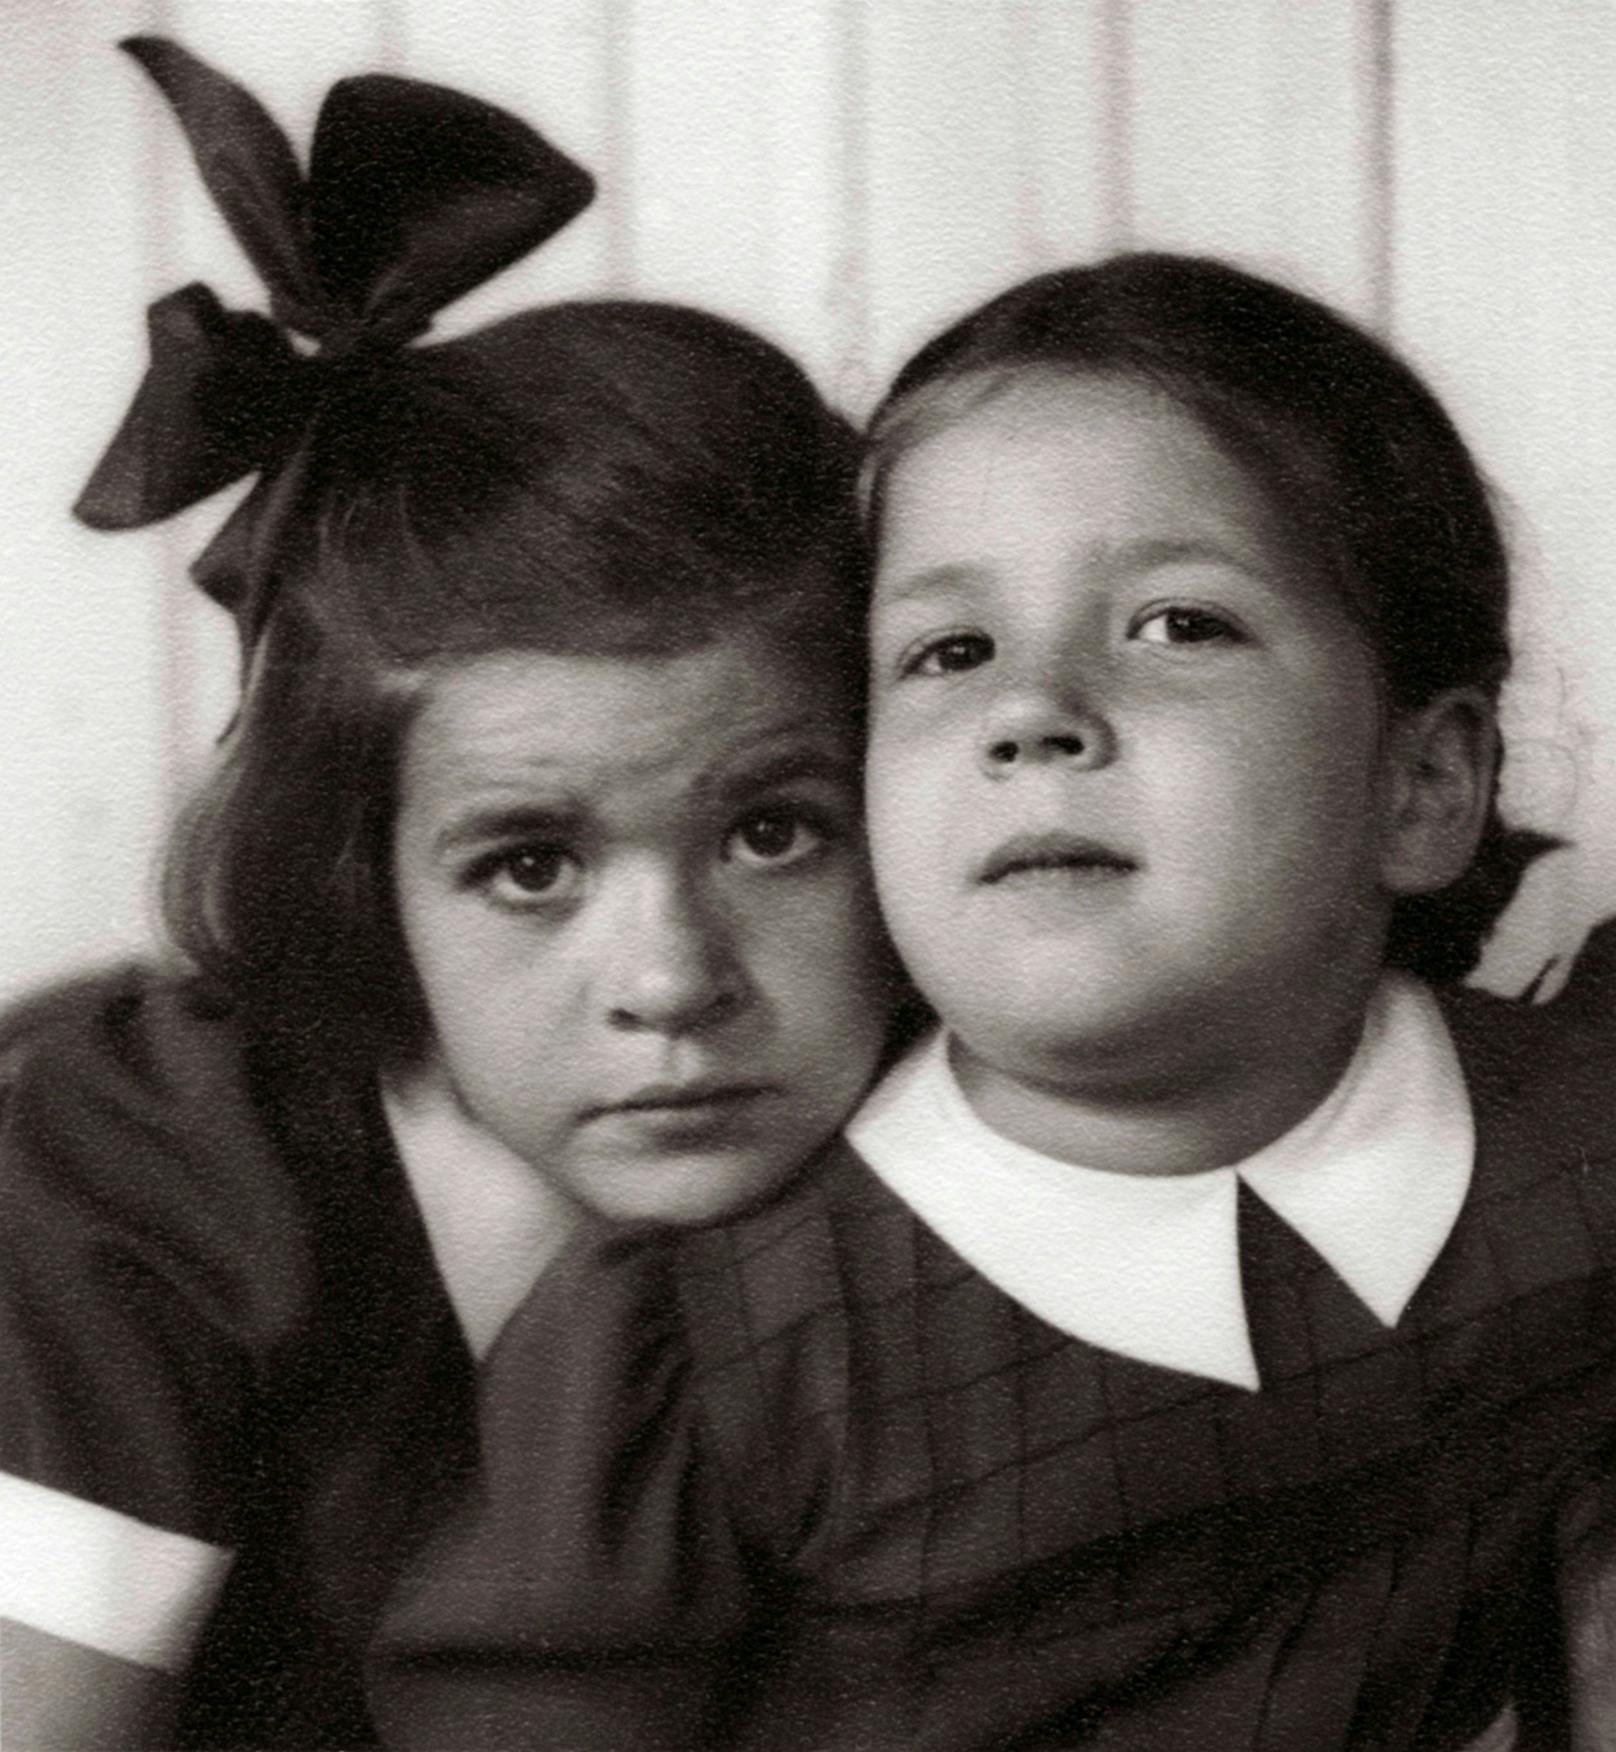 Die österreichischen Schauspielerinnen Elisabeth Orth und Christiane Hörbiger als Kinder. Töchter von Paula Wessely. Photographie um 1944. 